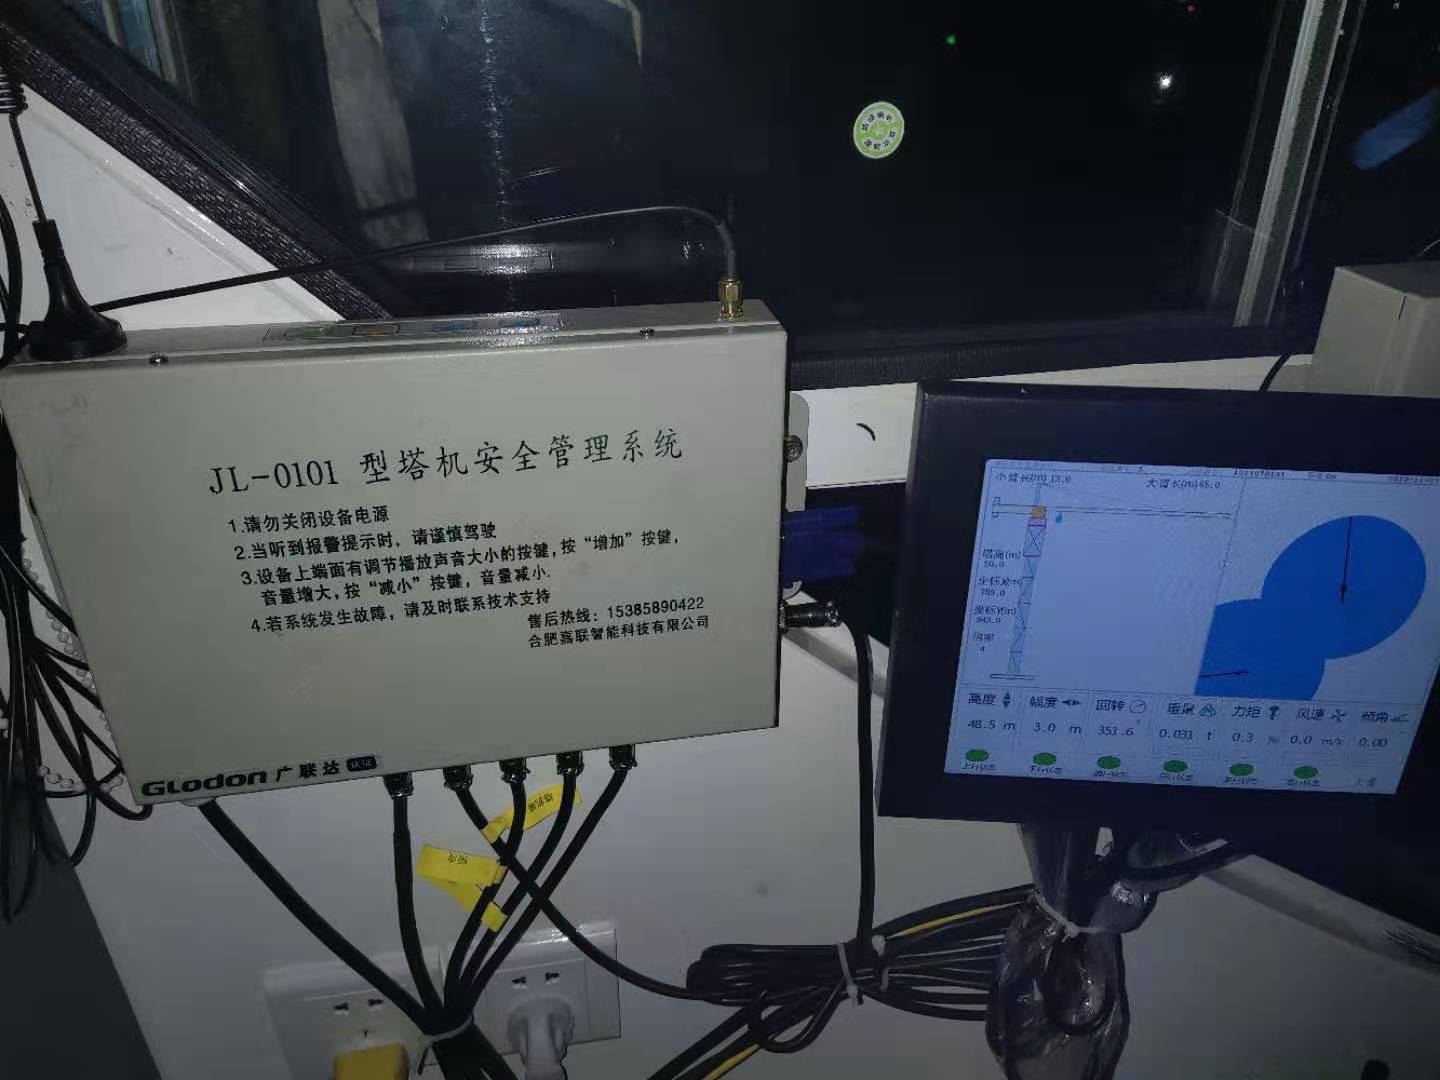 乐东黎族自治县塔机安全监测系统厂家 塔吊监测